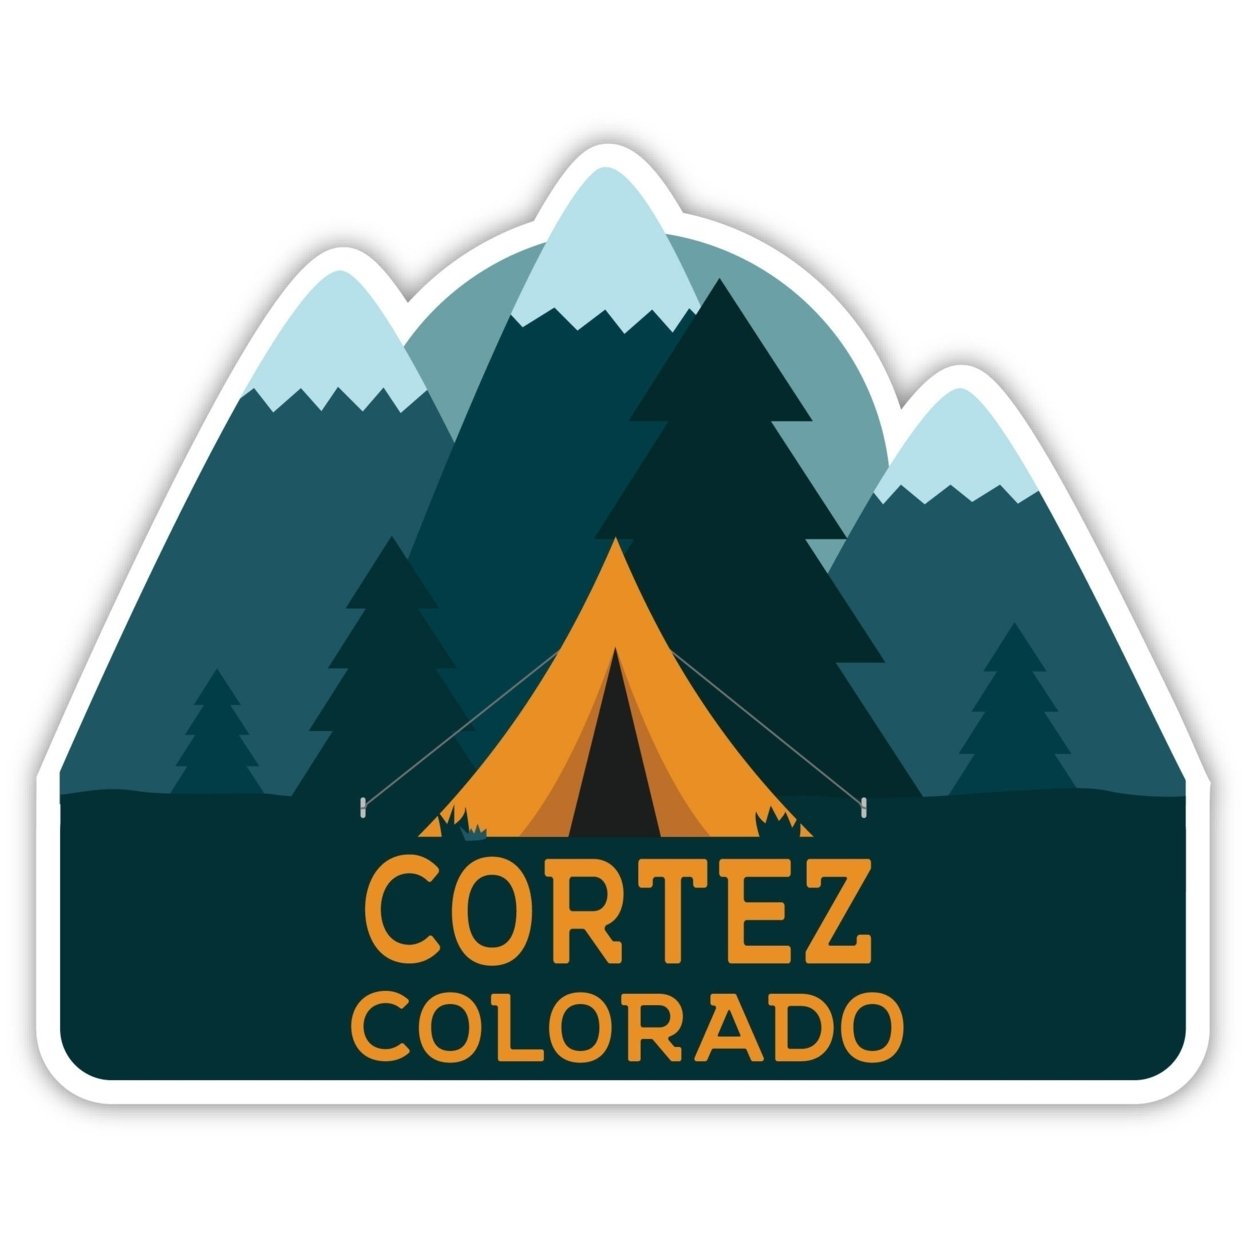 Cortez Colorado Souvenir Decorative Stickers (Choose Theme And Size) - Single Unit, 8-Inch, Tent